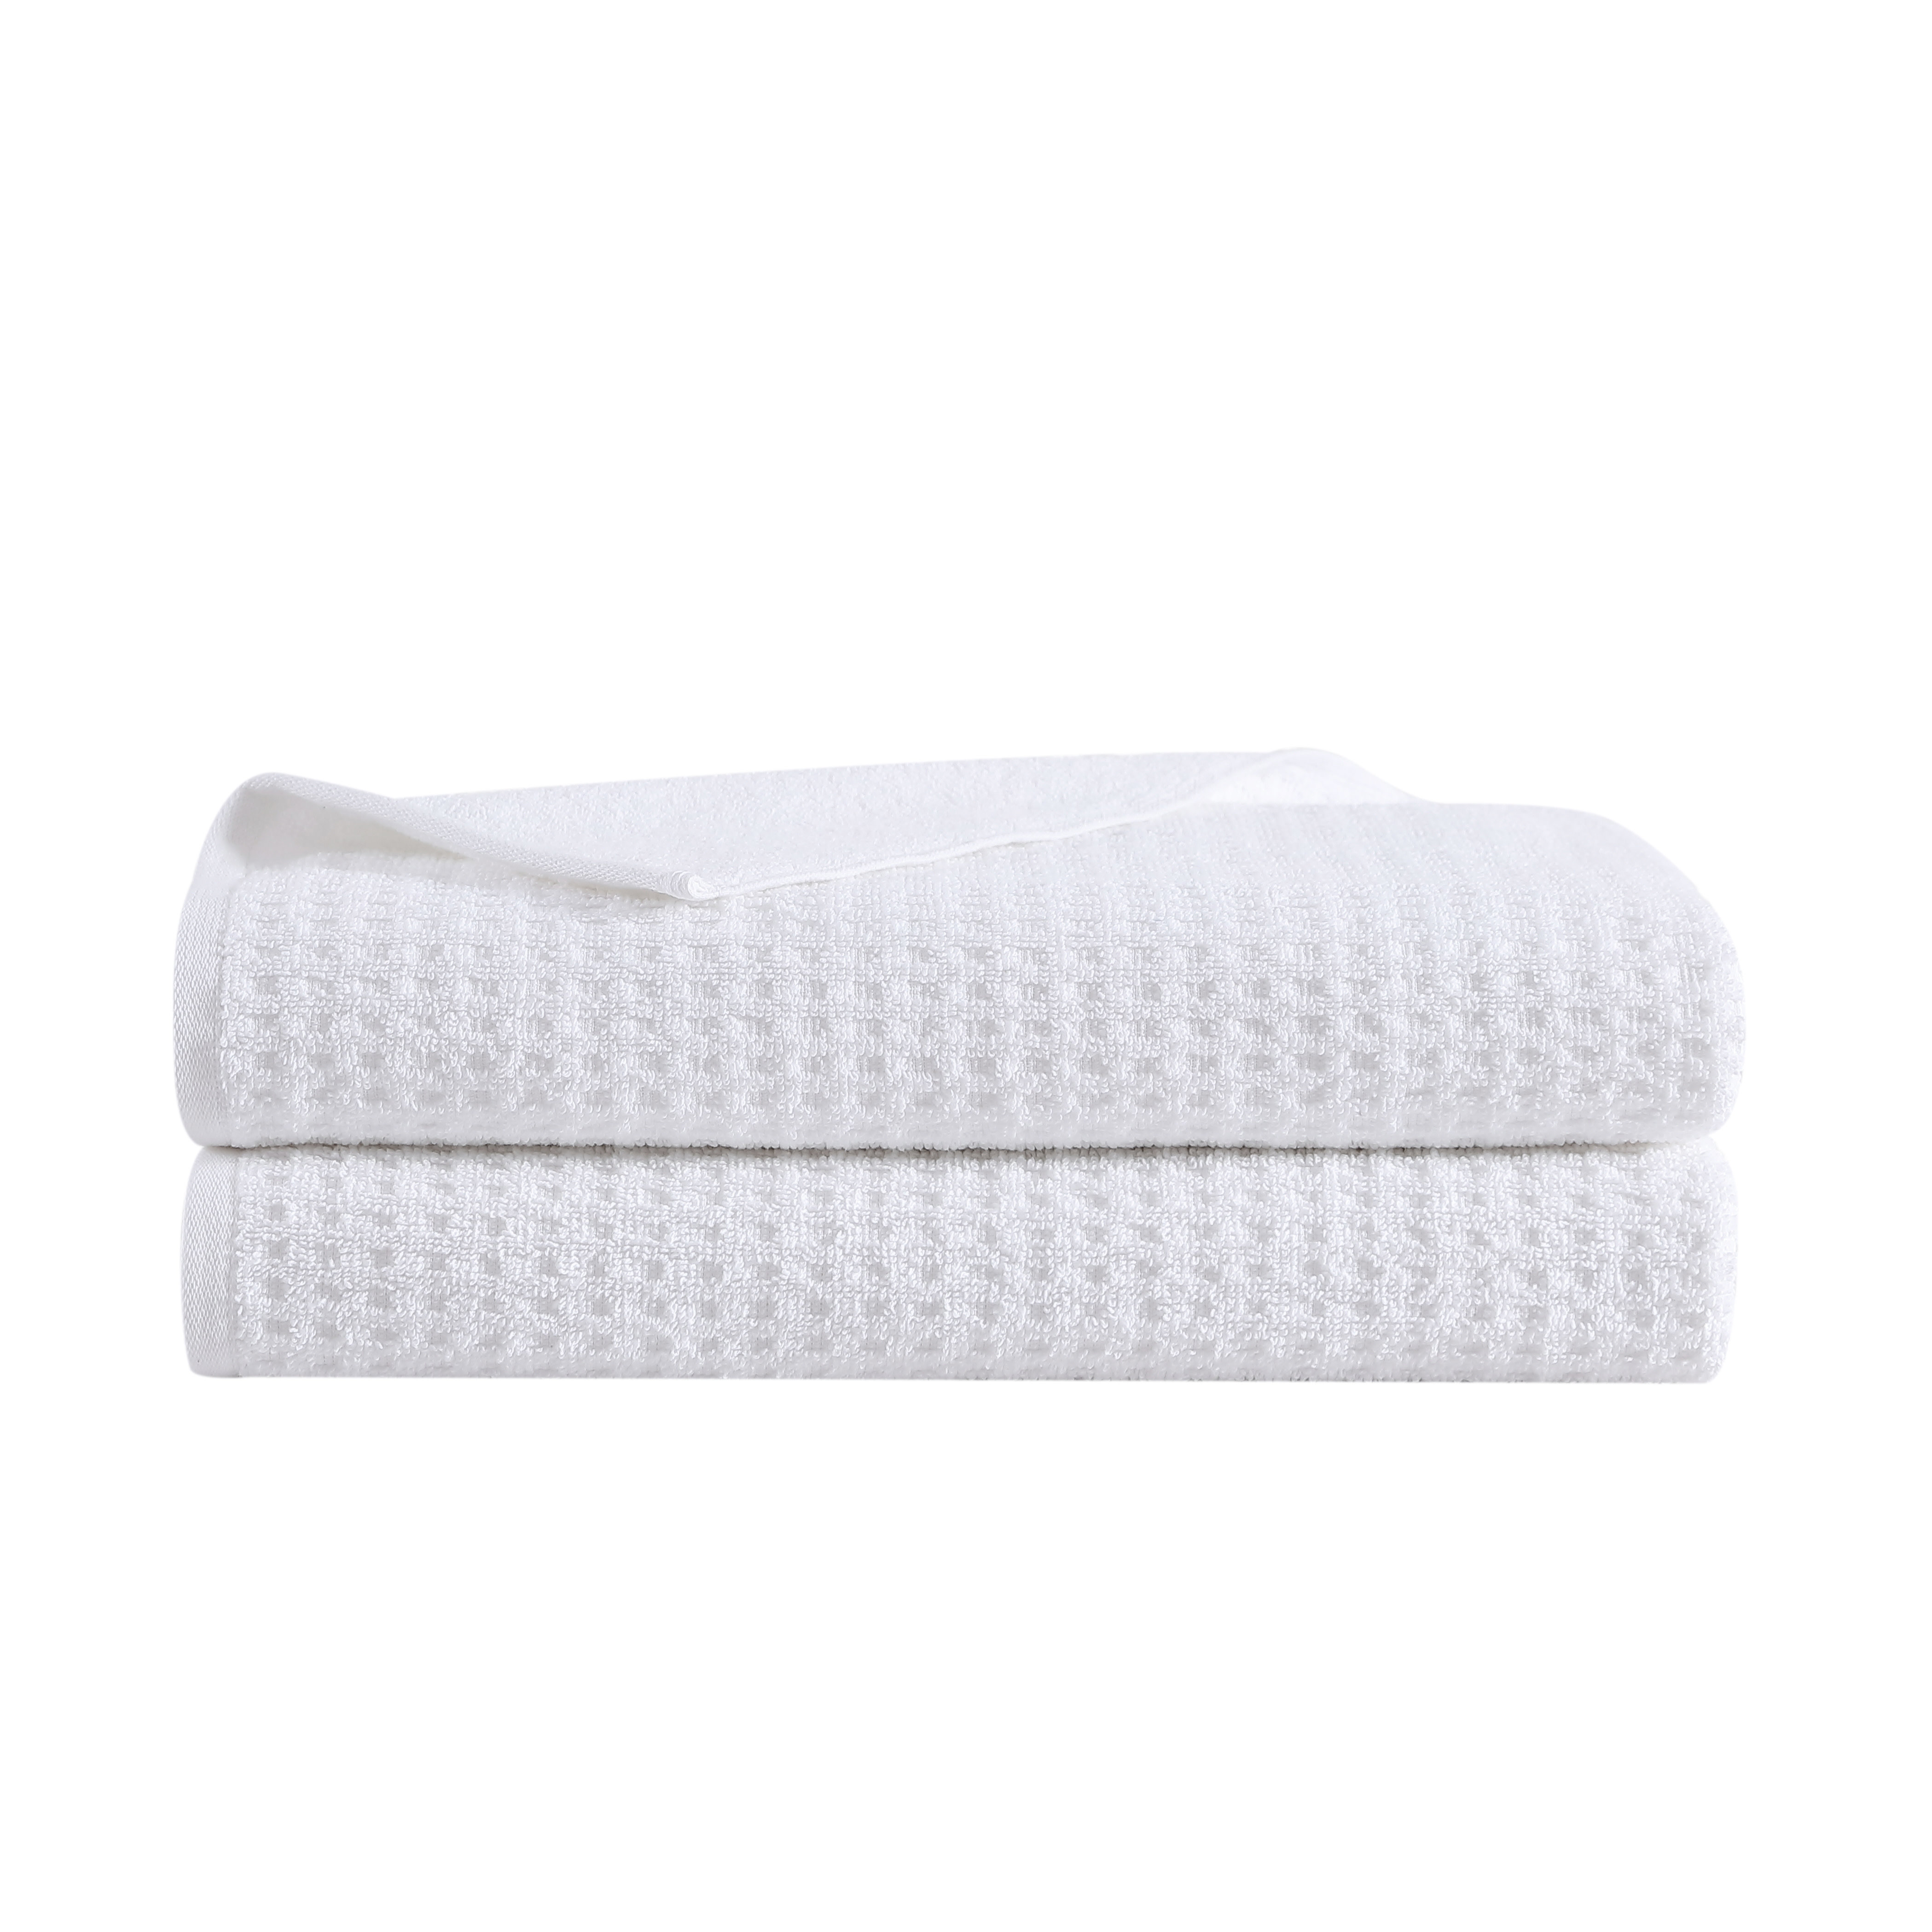 https://assets.wfcdn.com/im/08226806/compr-r85/2384/238495450/2-piece-100-cotton-bath-sheet-towel-set.jpg